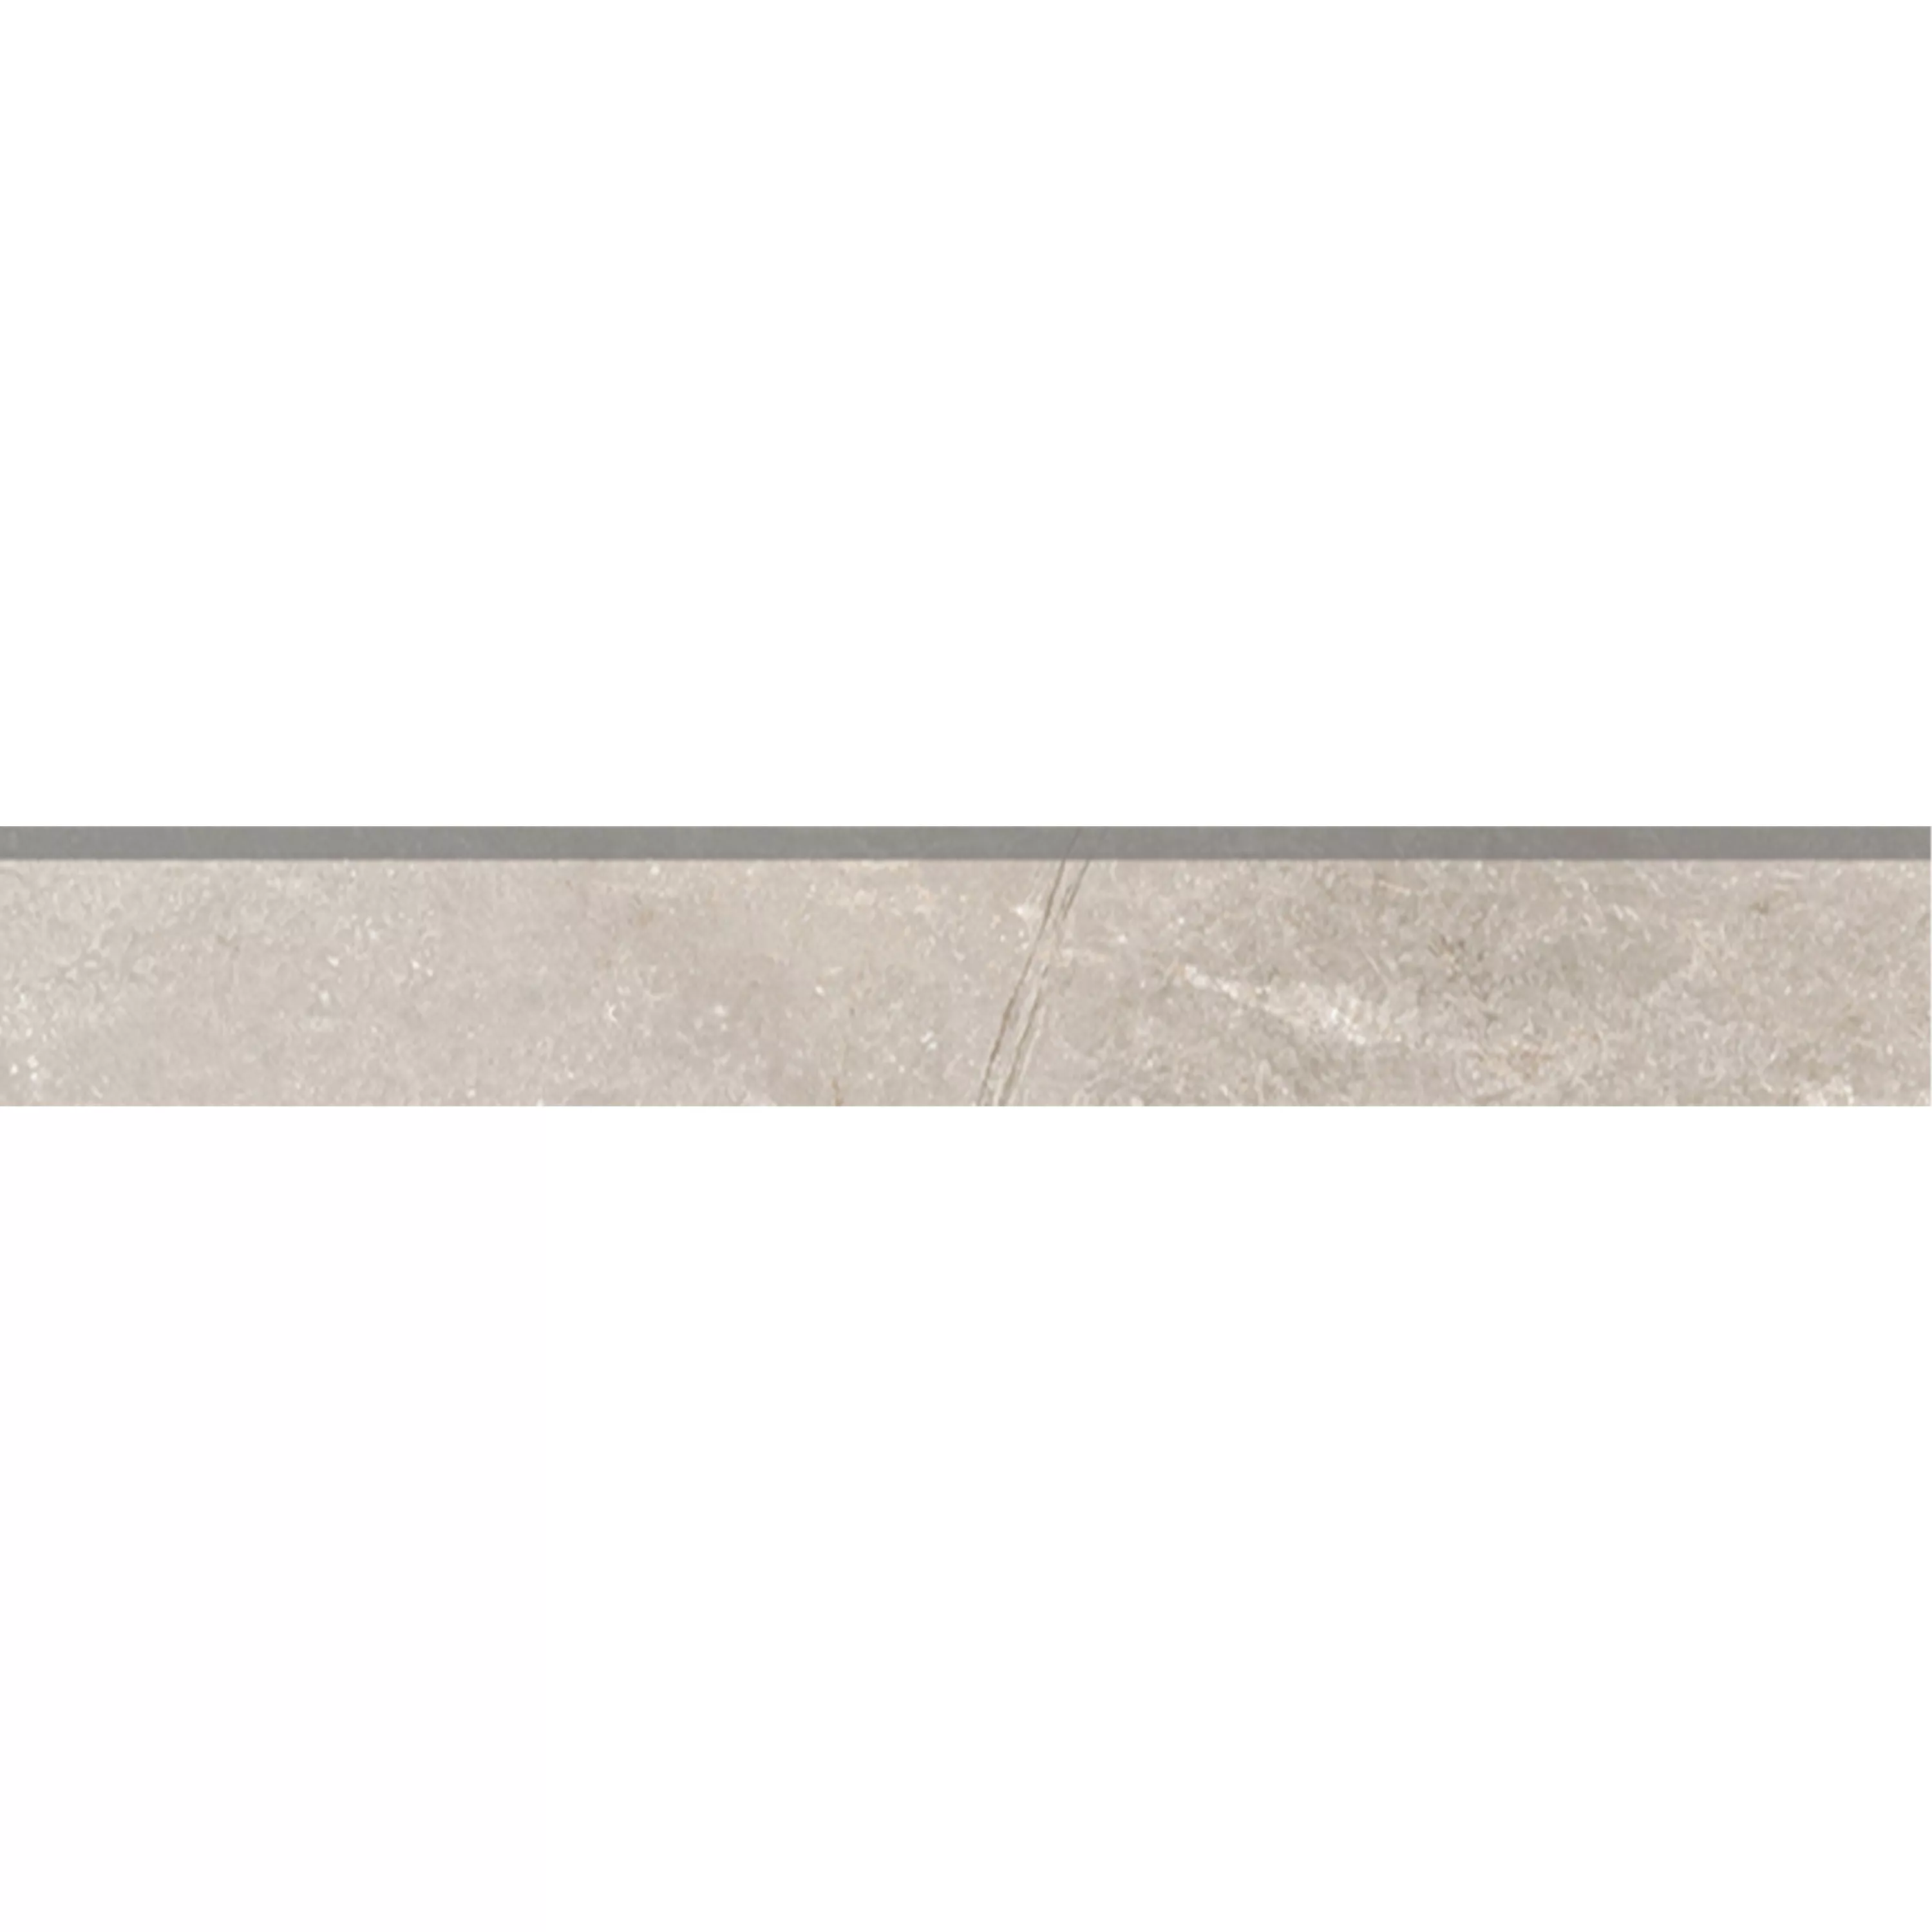 Πλακάκια Δαπέδου Pangea Μαρμάρινη Όψη Παγωμένος Μπεζ Bάση 7x60cm